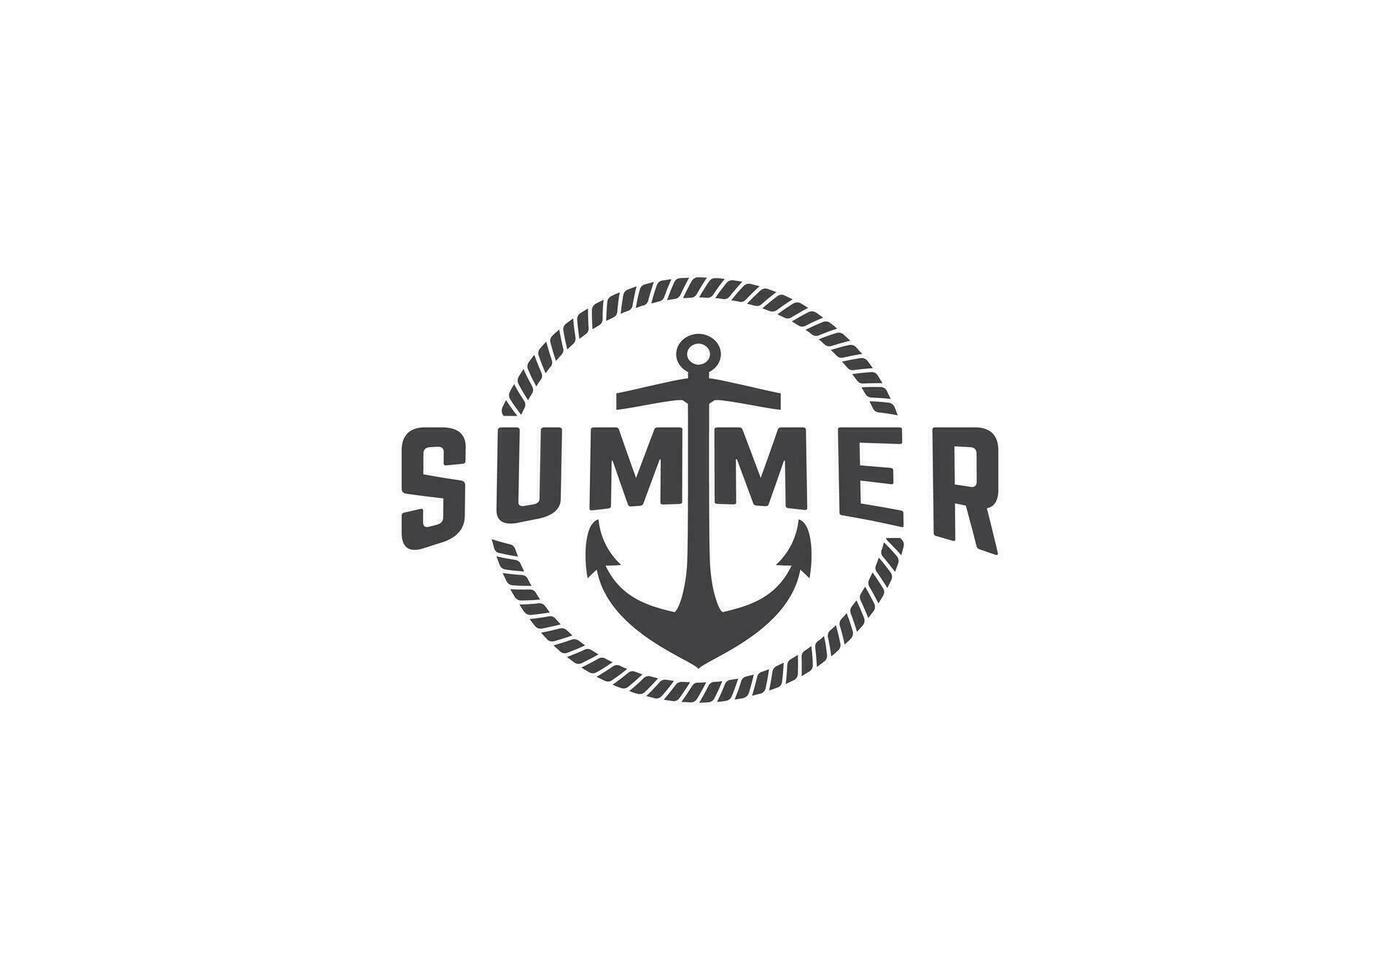 esta es verano y playa logo diseño vector